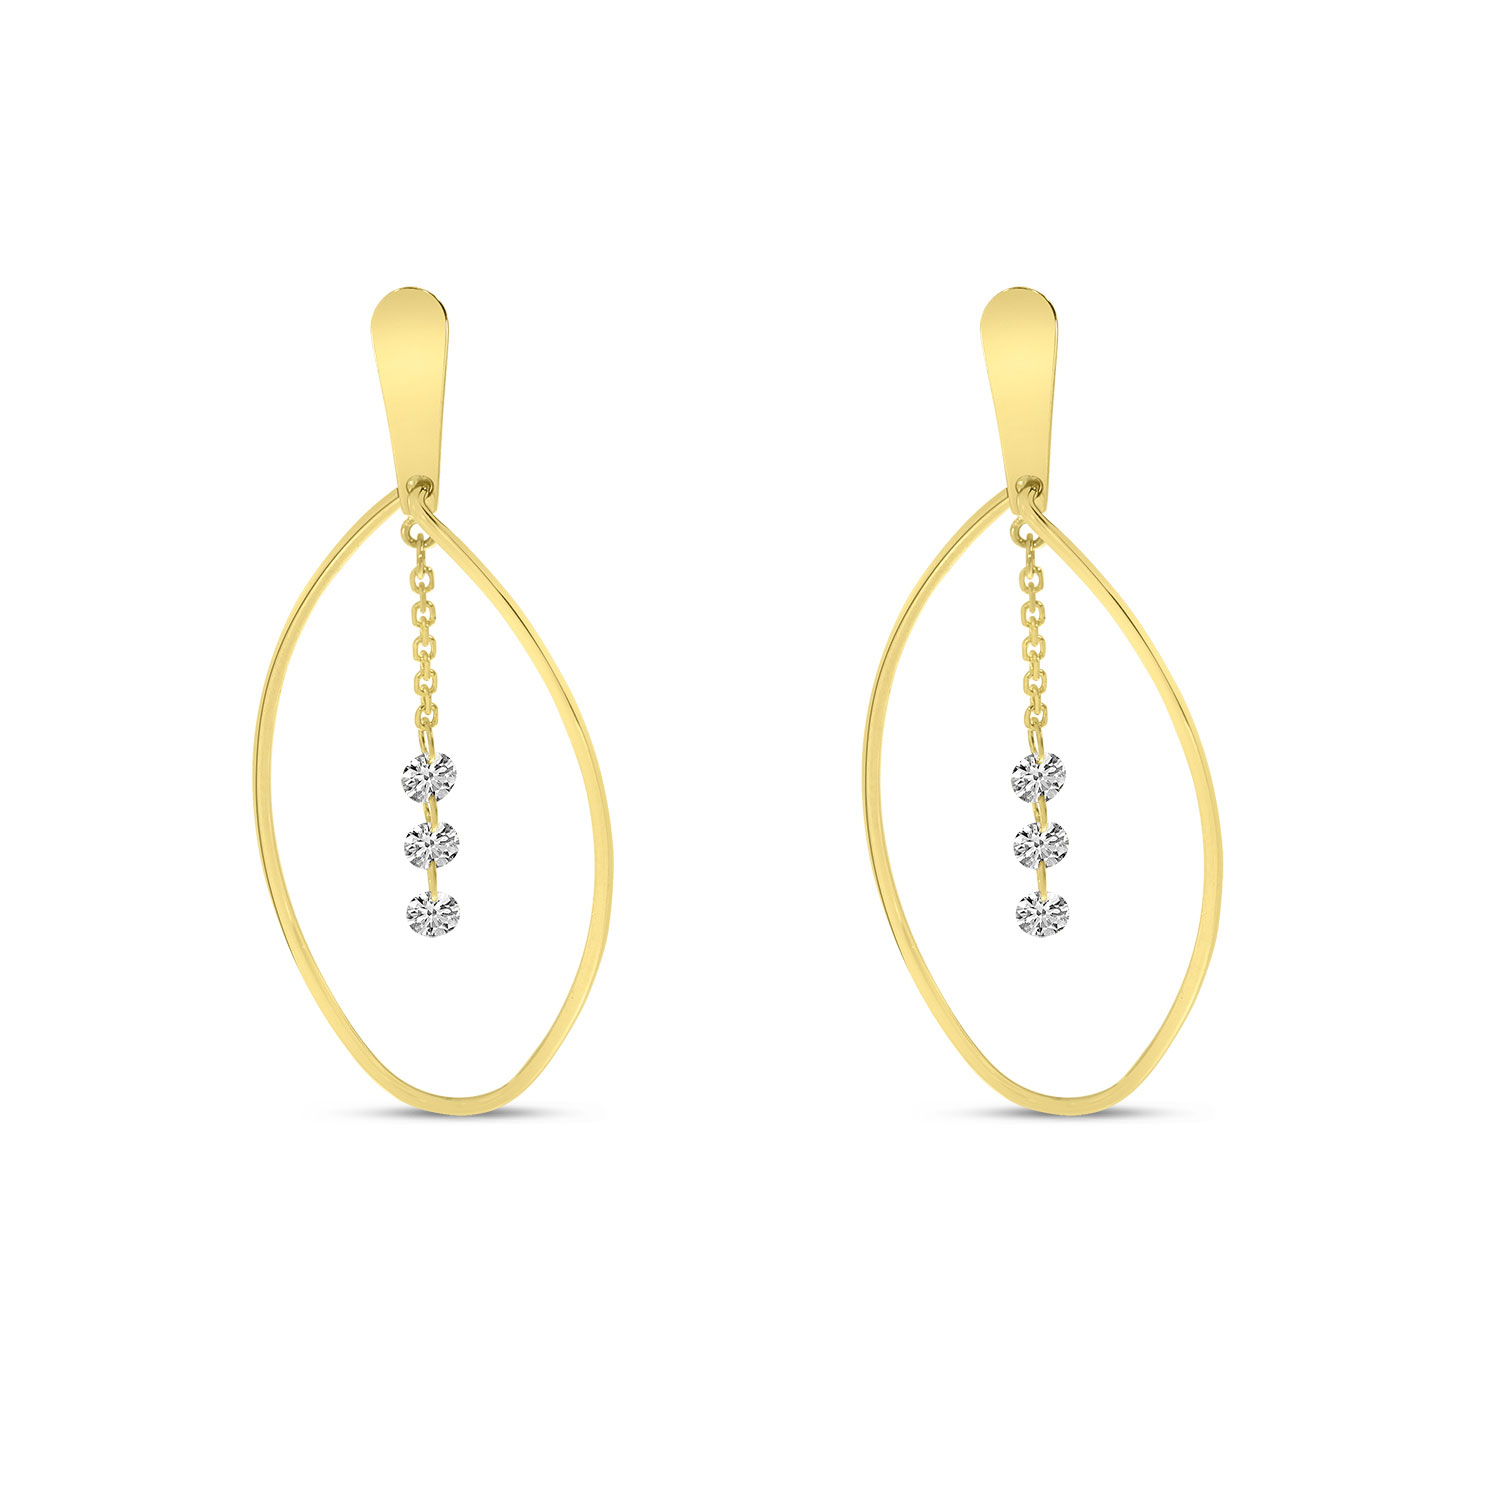 14K Yellow Gold Dashing Diamond Long Oval Earrings